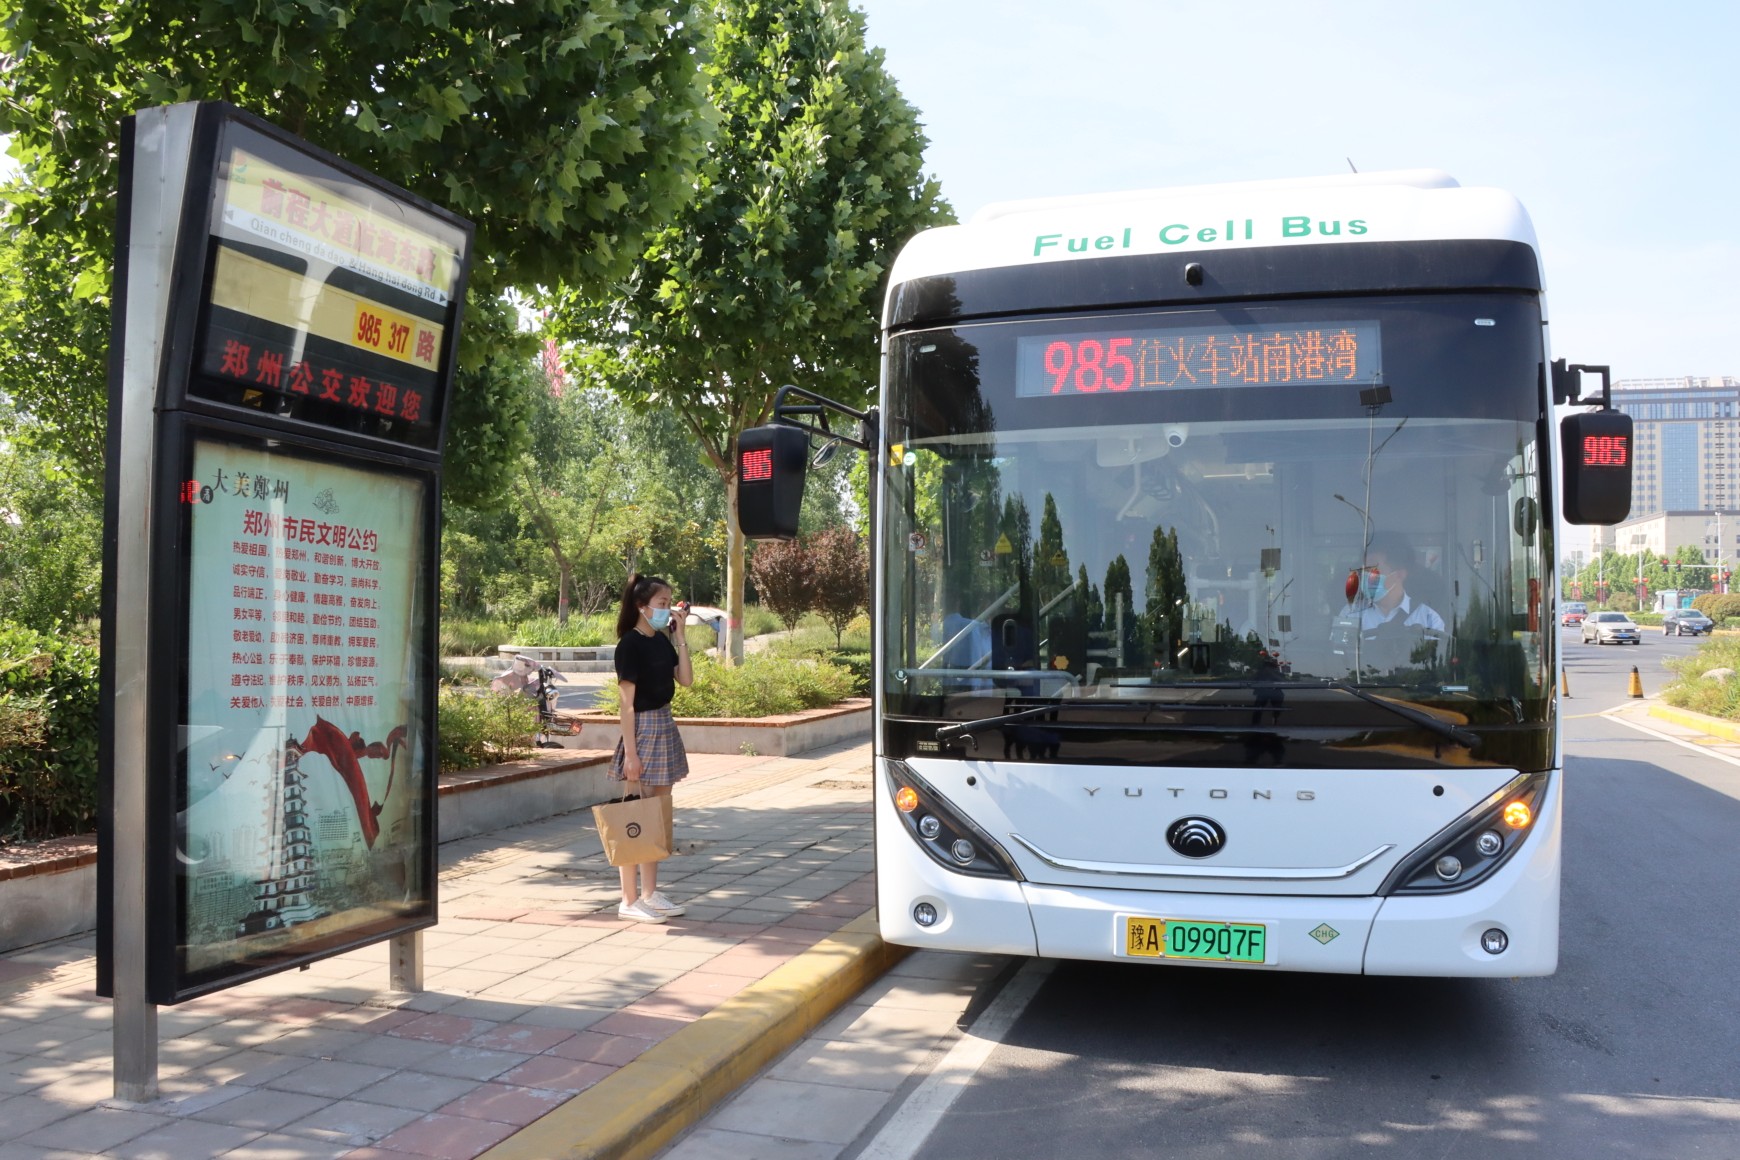 郑州985路公交新增20台氢动能公交车:内设亲子座椅,车身配置盲区监测